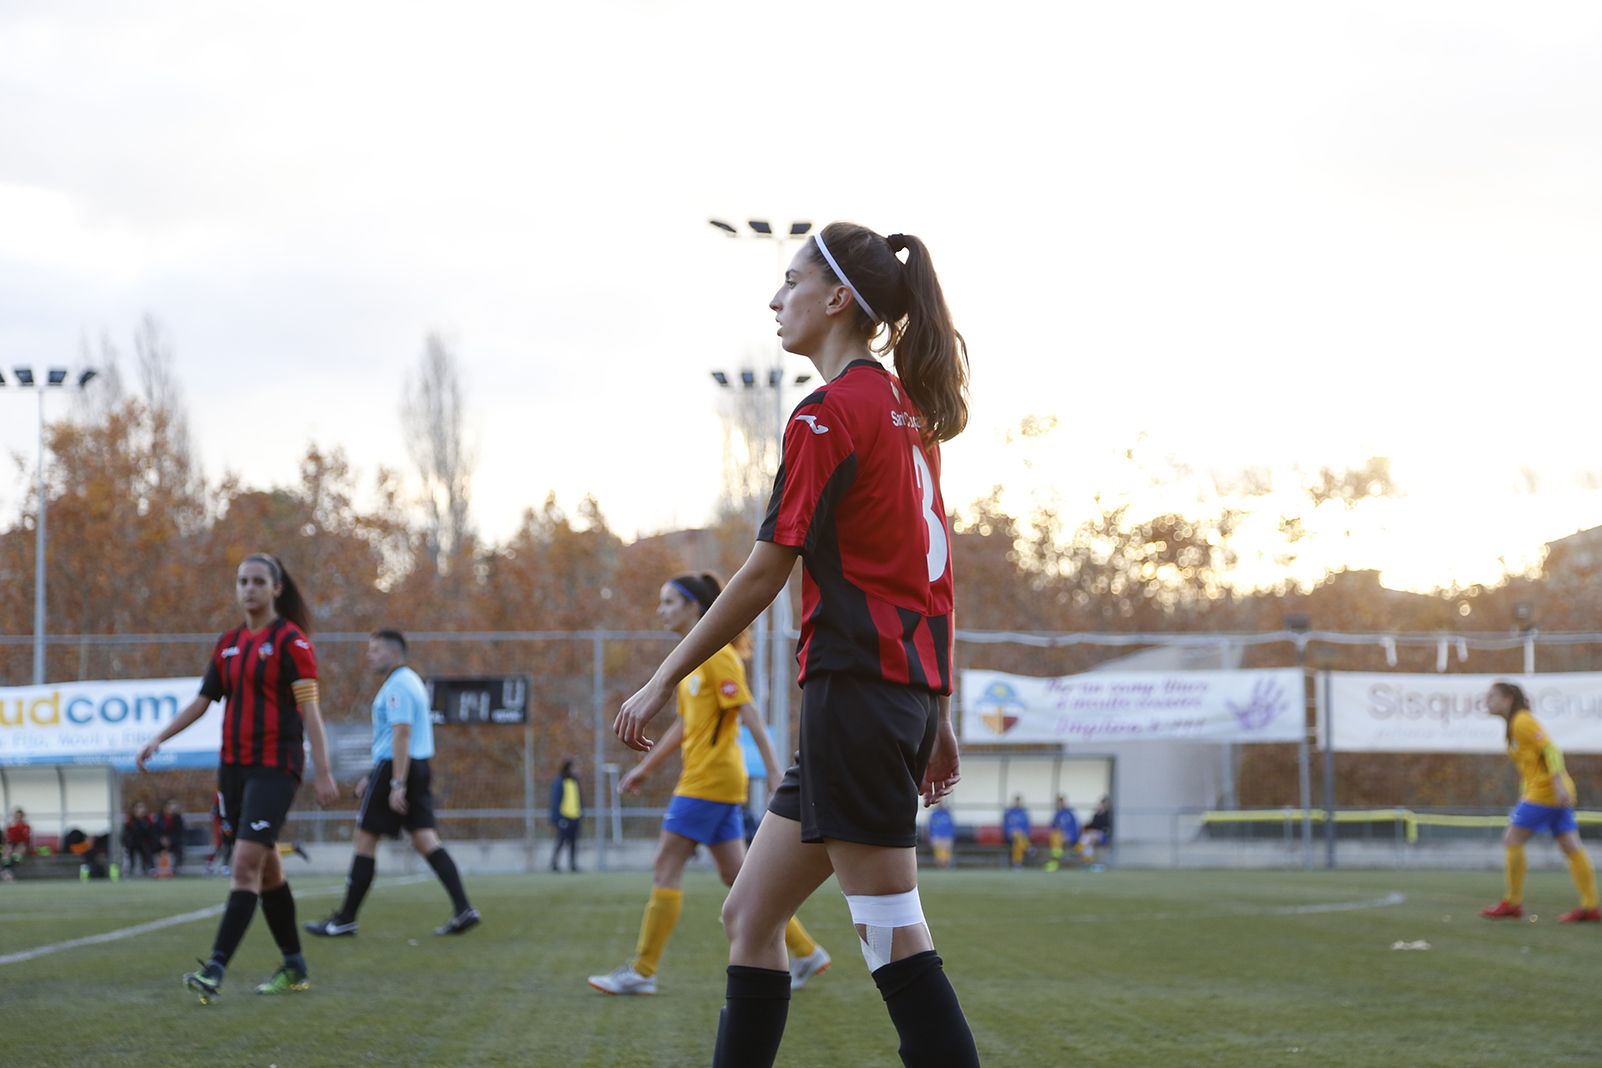 Partit de lliga futbol femení Sant Cugat FC- CD Fontasanta-Fatjó. FOTO: Anna Bassa